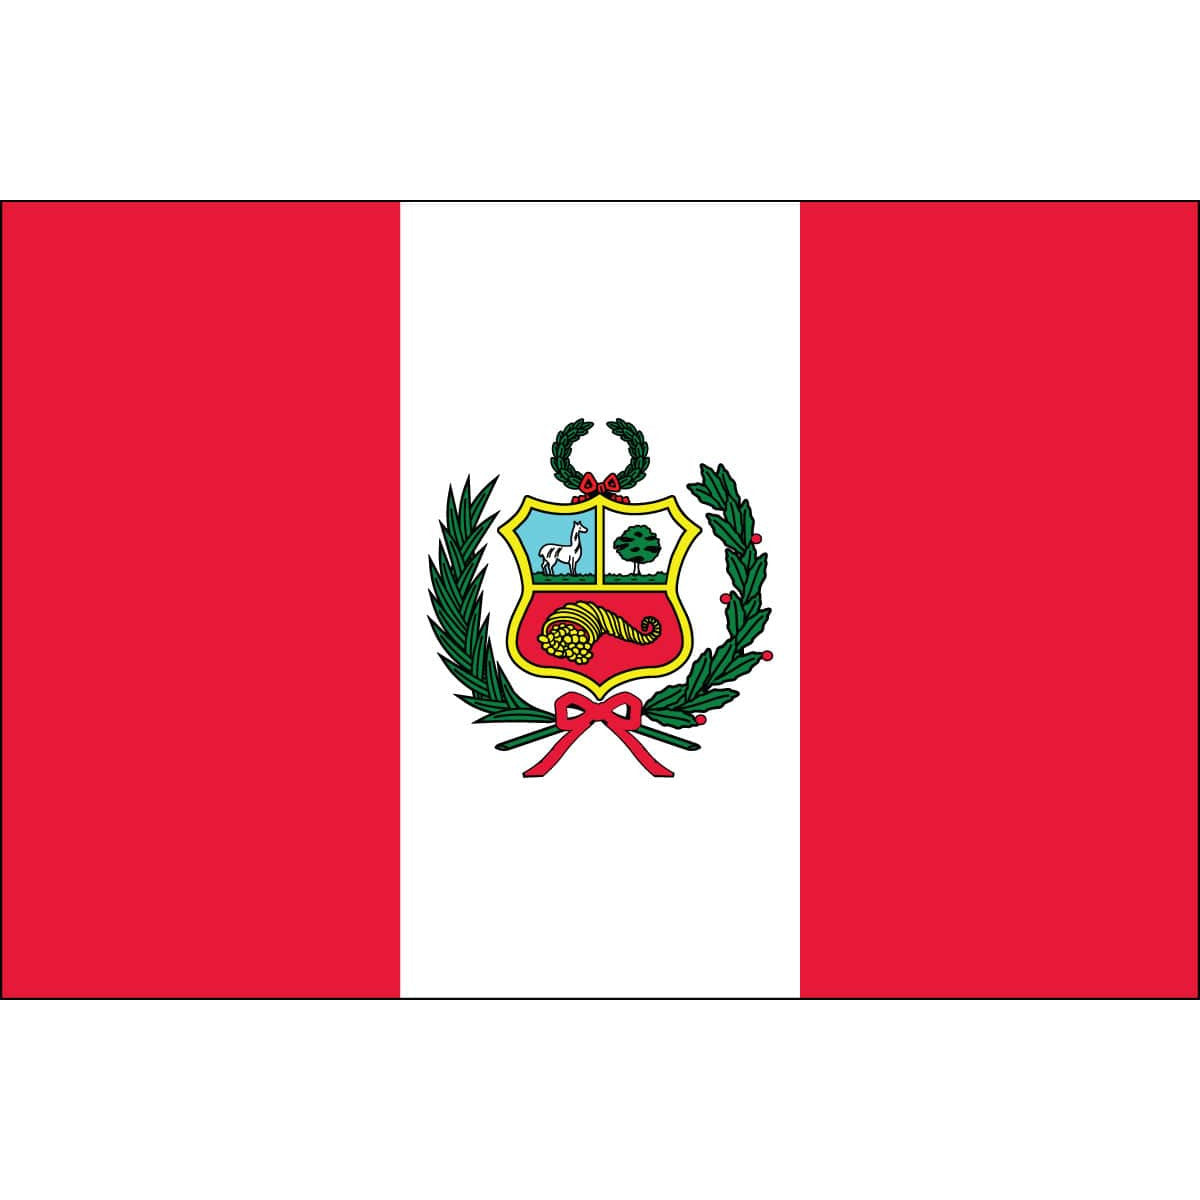 Peru Cajamarca